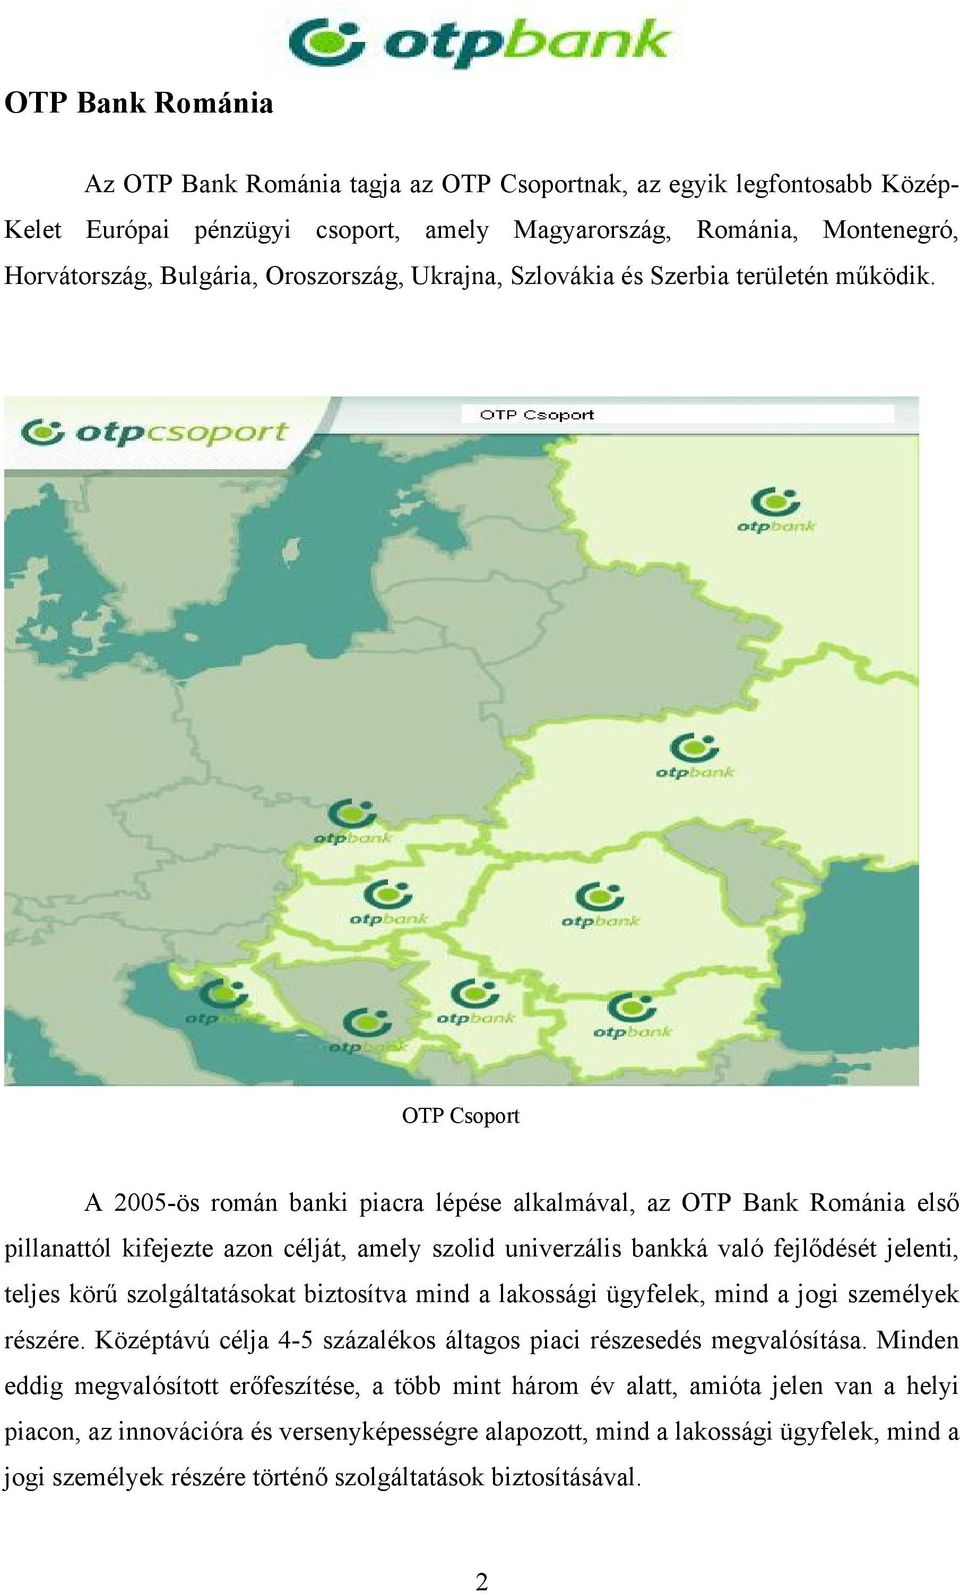 OTP Csoport A 2005-ös román banki piacra lépése alkalmával, az OTP Bank Románia első pillanattól kifejezte azon célját, amely szolid univerzális bankká való fejlődését jelenti, teljes körű